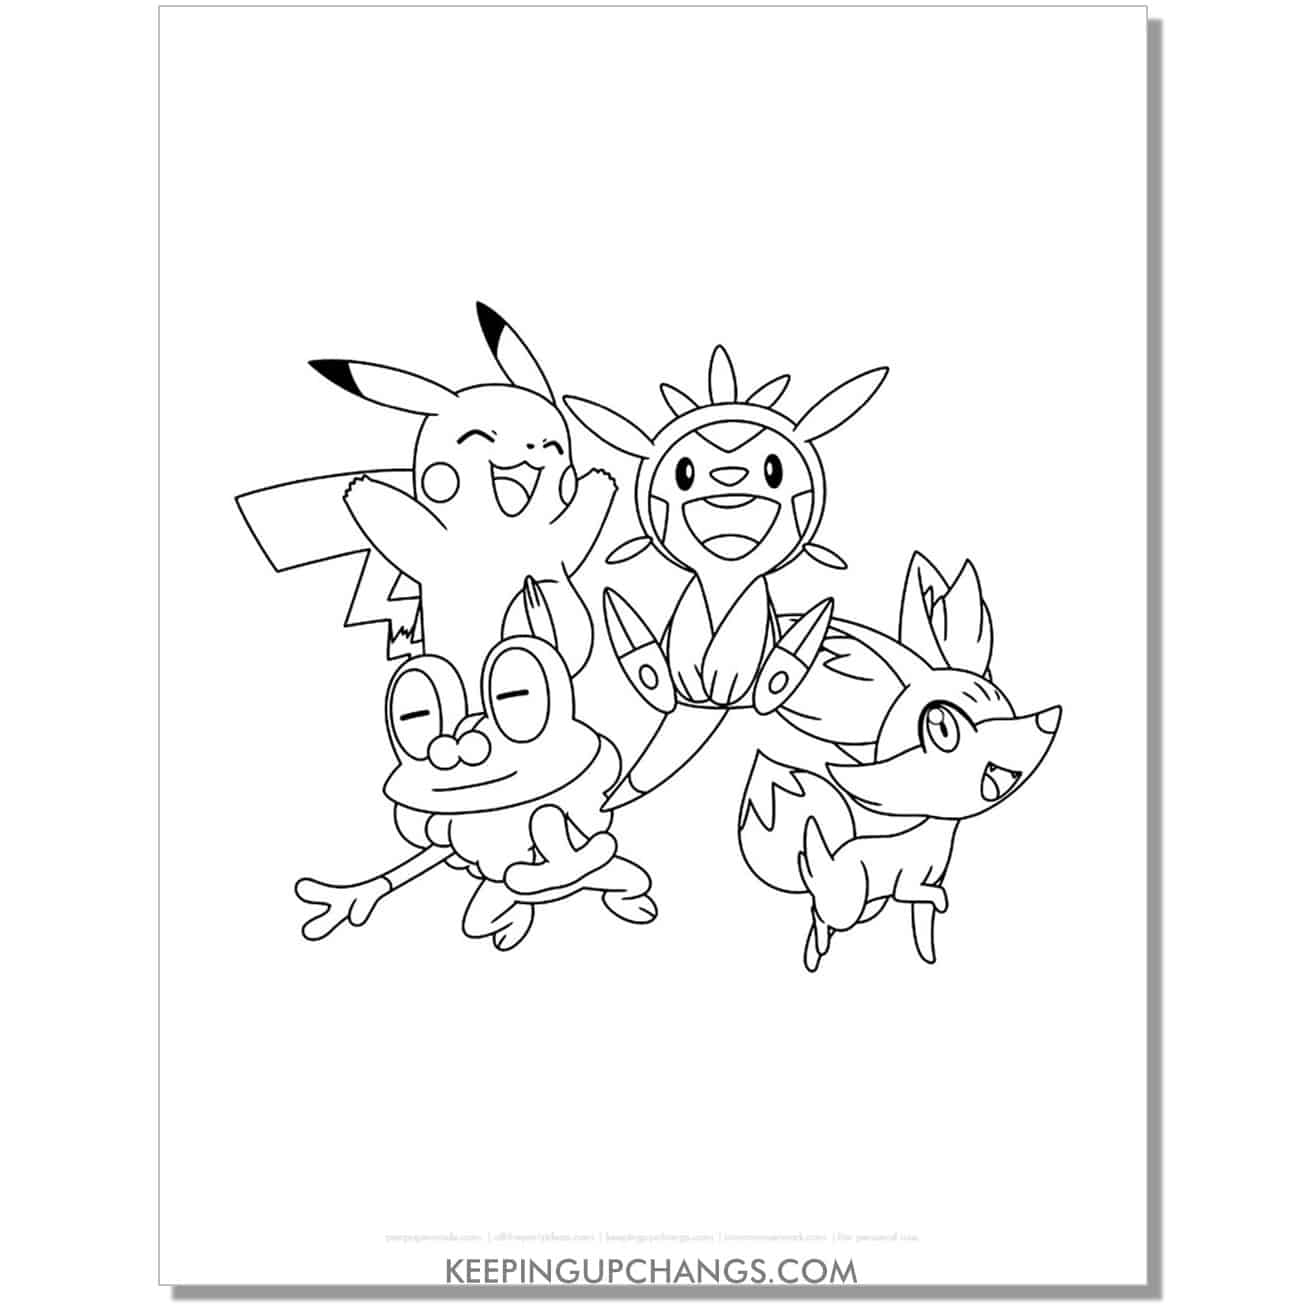 pikachu, chespin, froakie, fennekin pokemon coloring page, sheet.